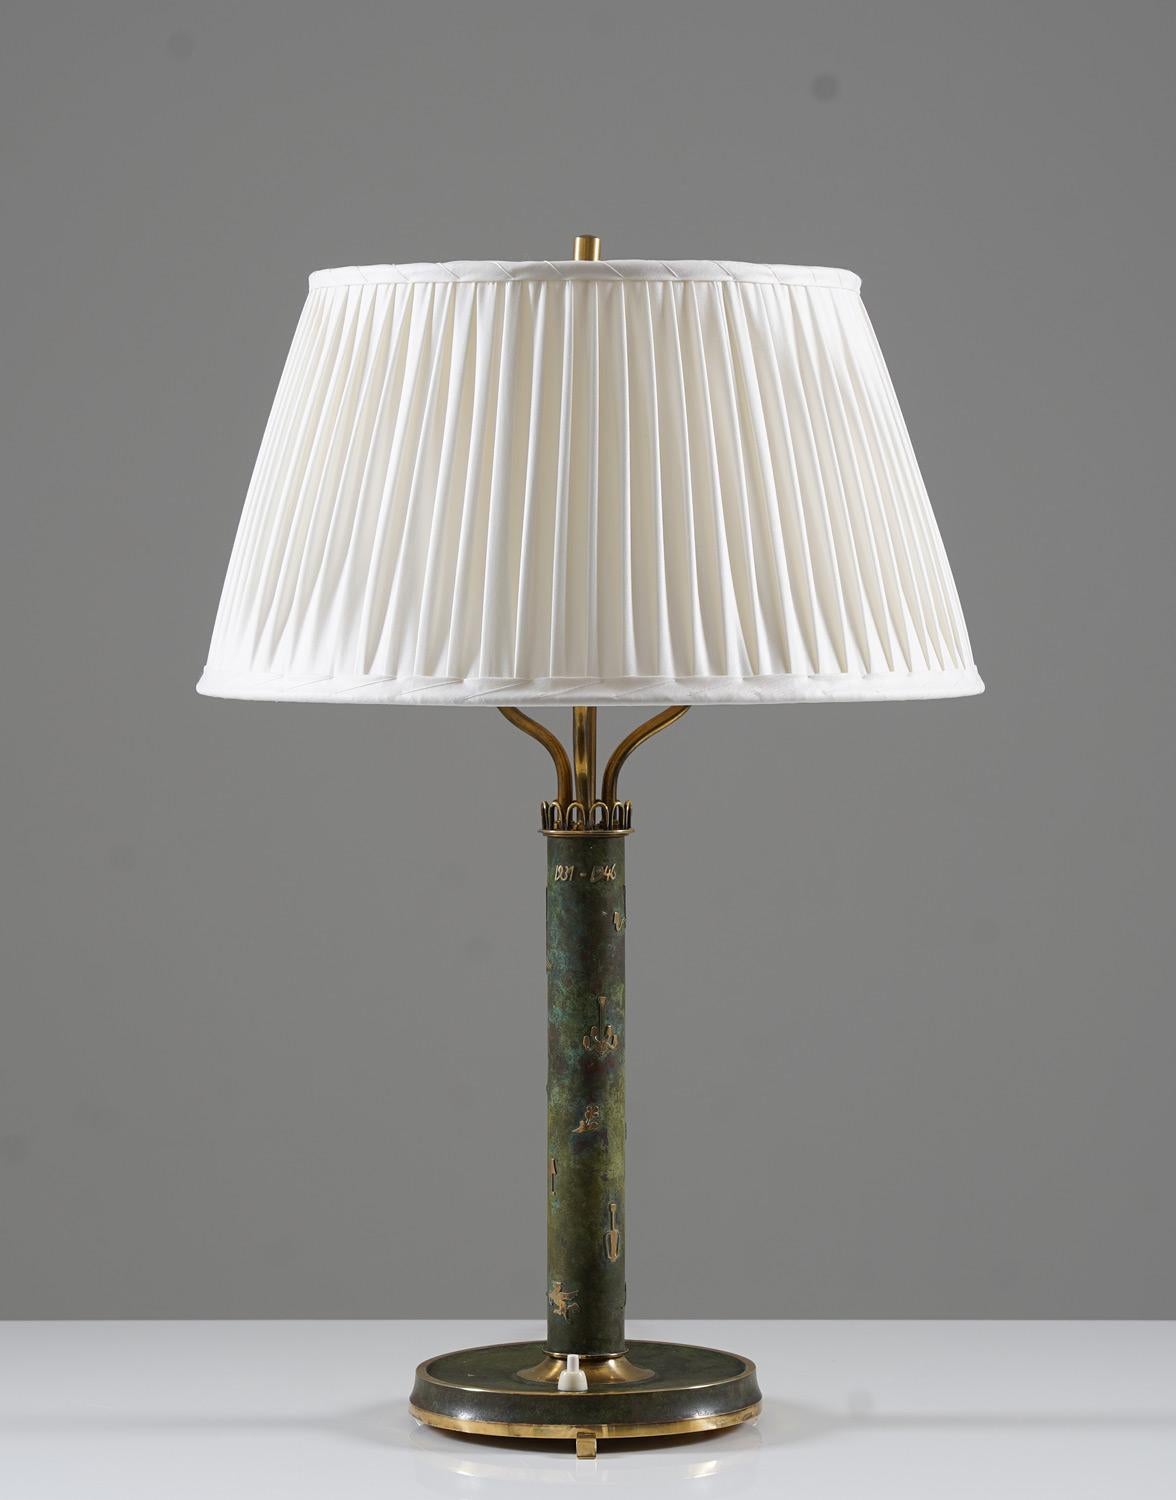 Lampe de table fabriquée par Liberty, Suède, 1946. 
Cette lampe est très probablement une production interne, fabriquée en petit nombre ou même unique. La tige est décorée de différents modèles de lampes fabriqués par l'entreprise et porte